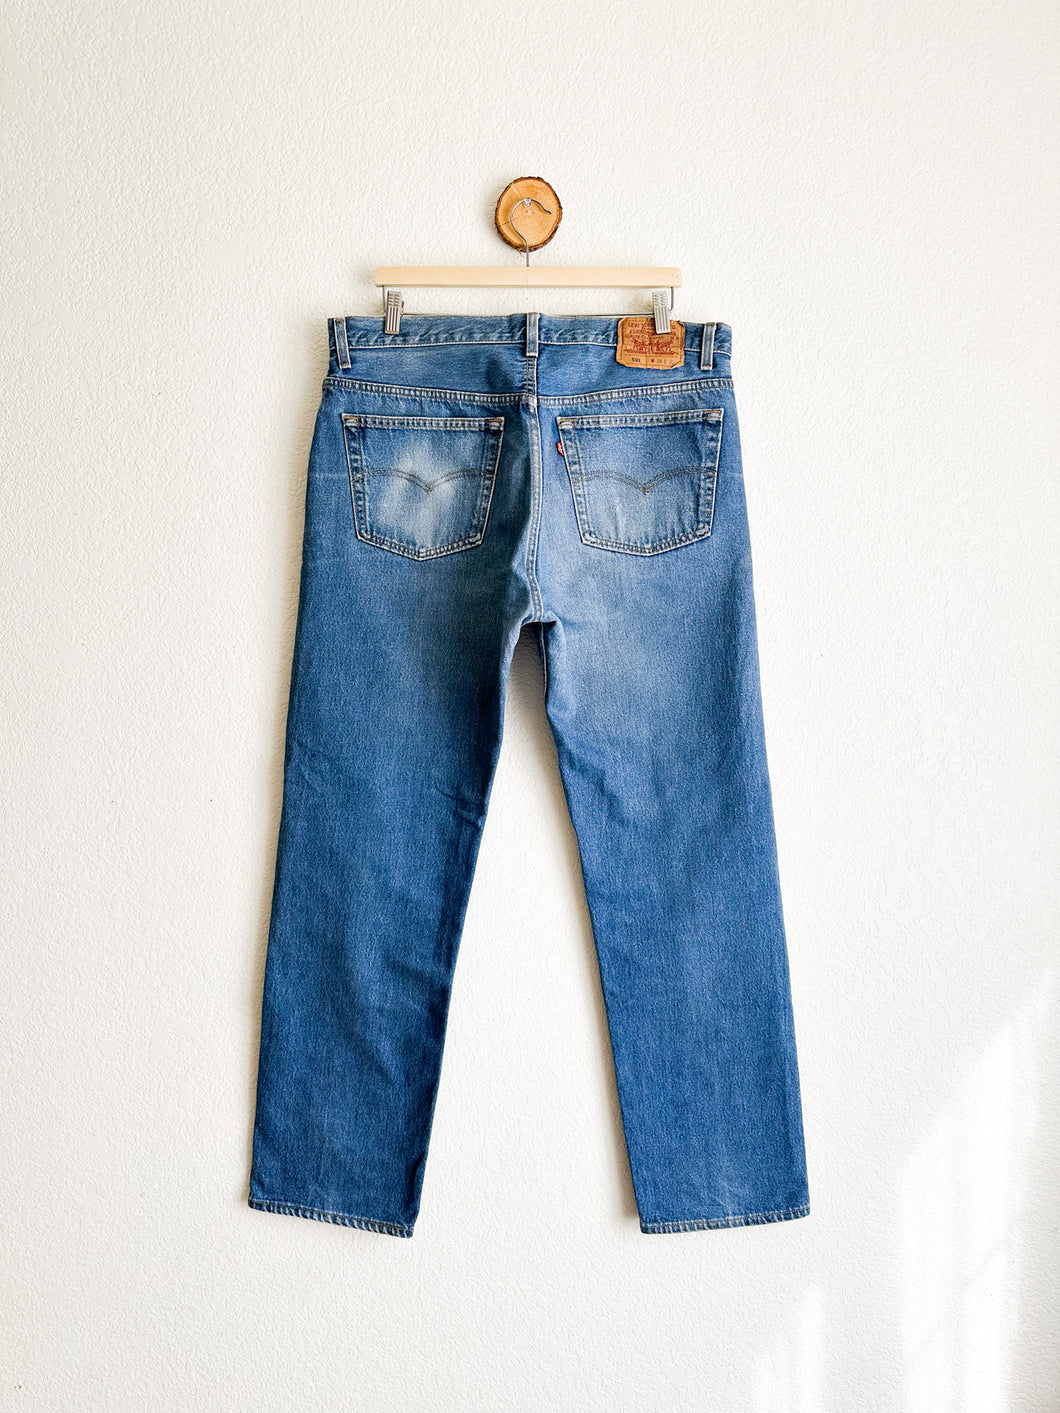 Vintage Levi's 501 Jeans - 37